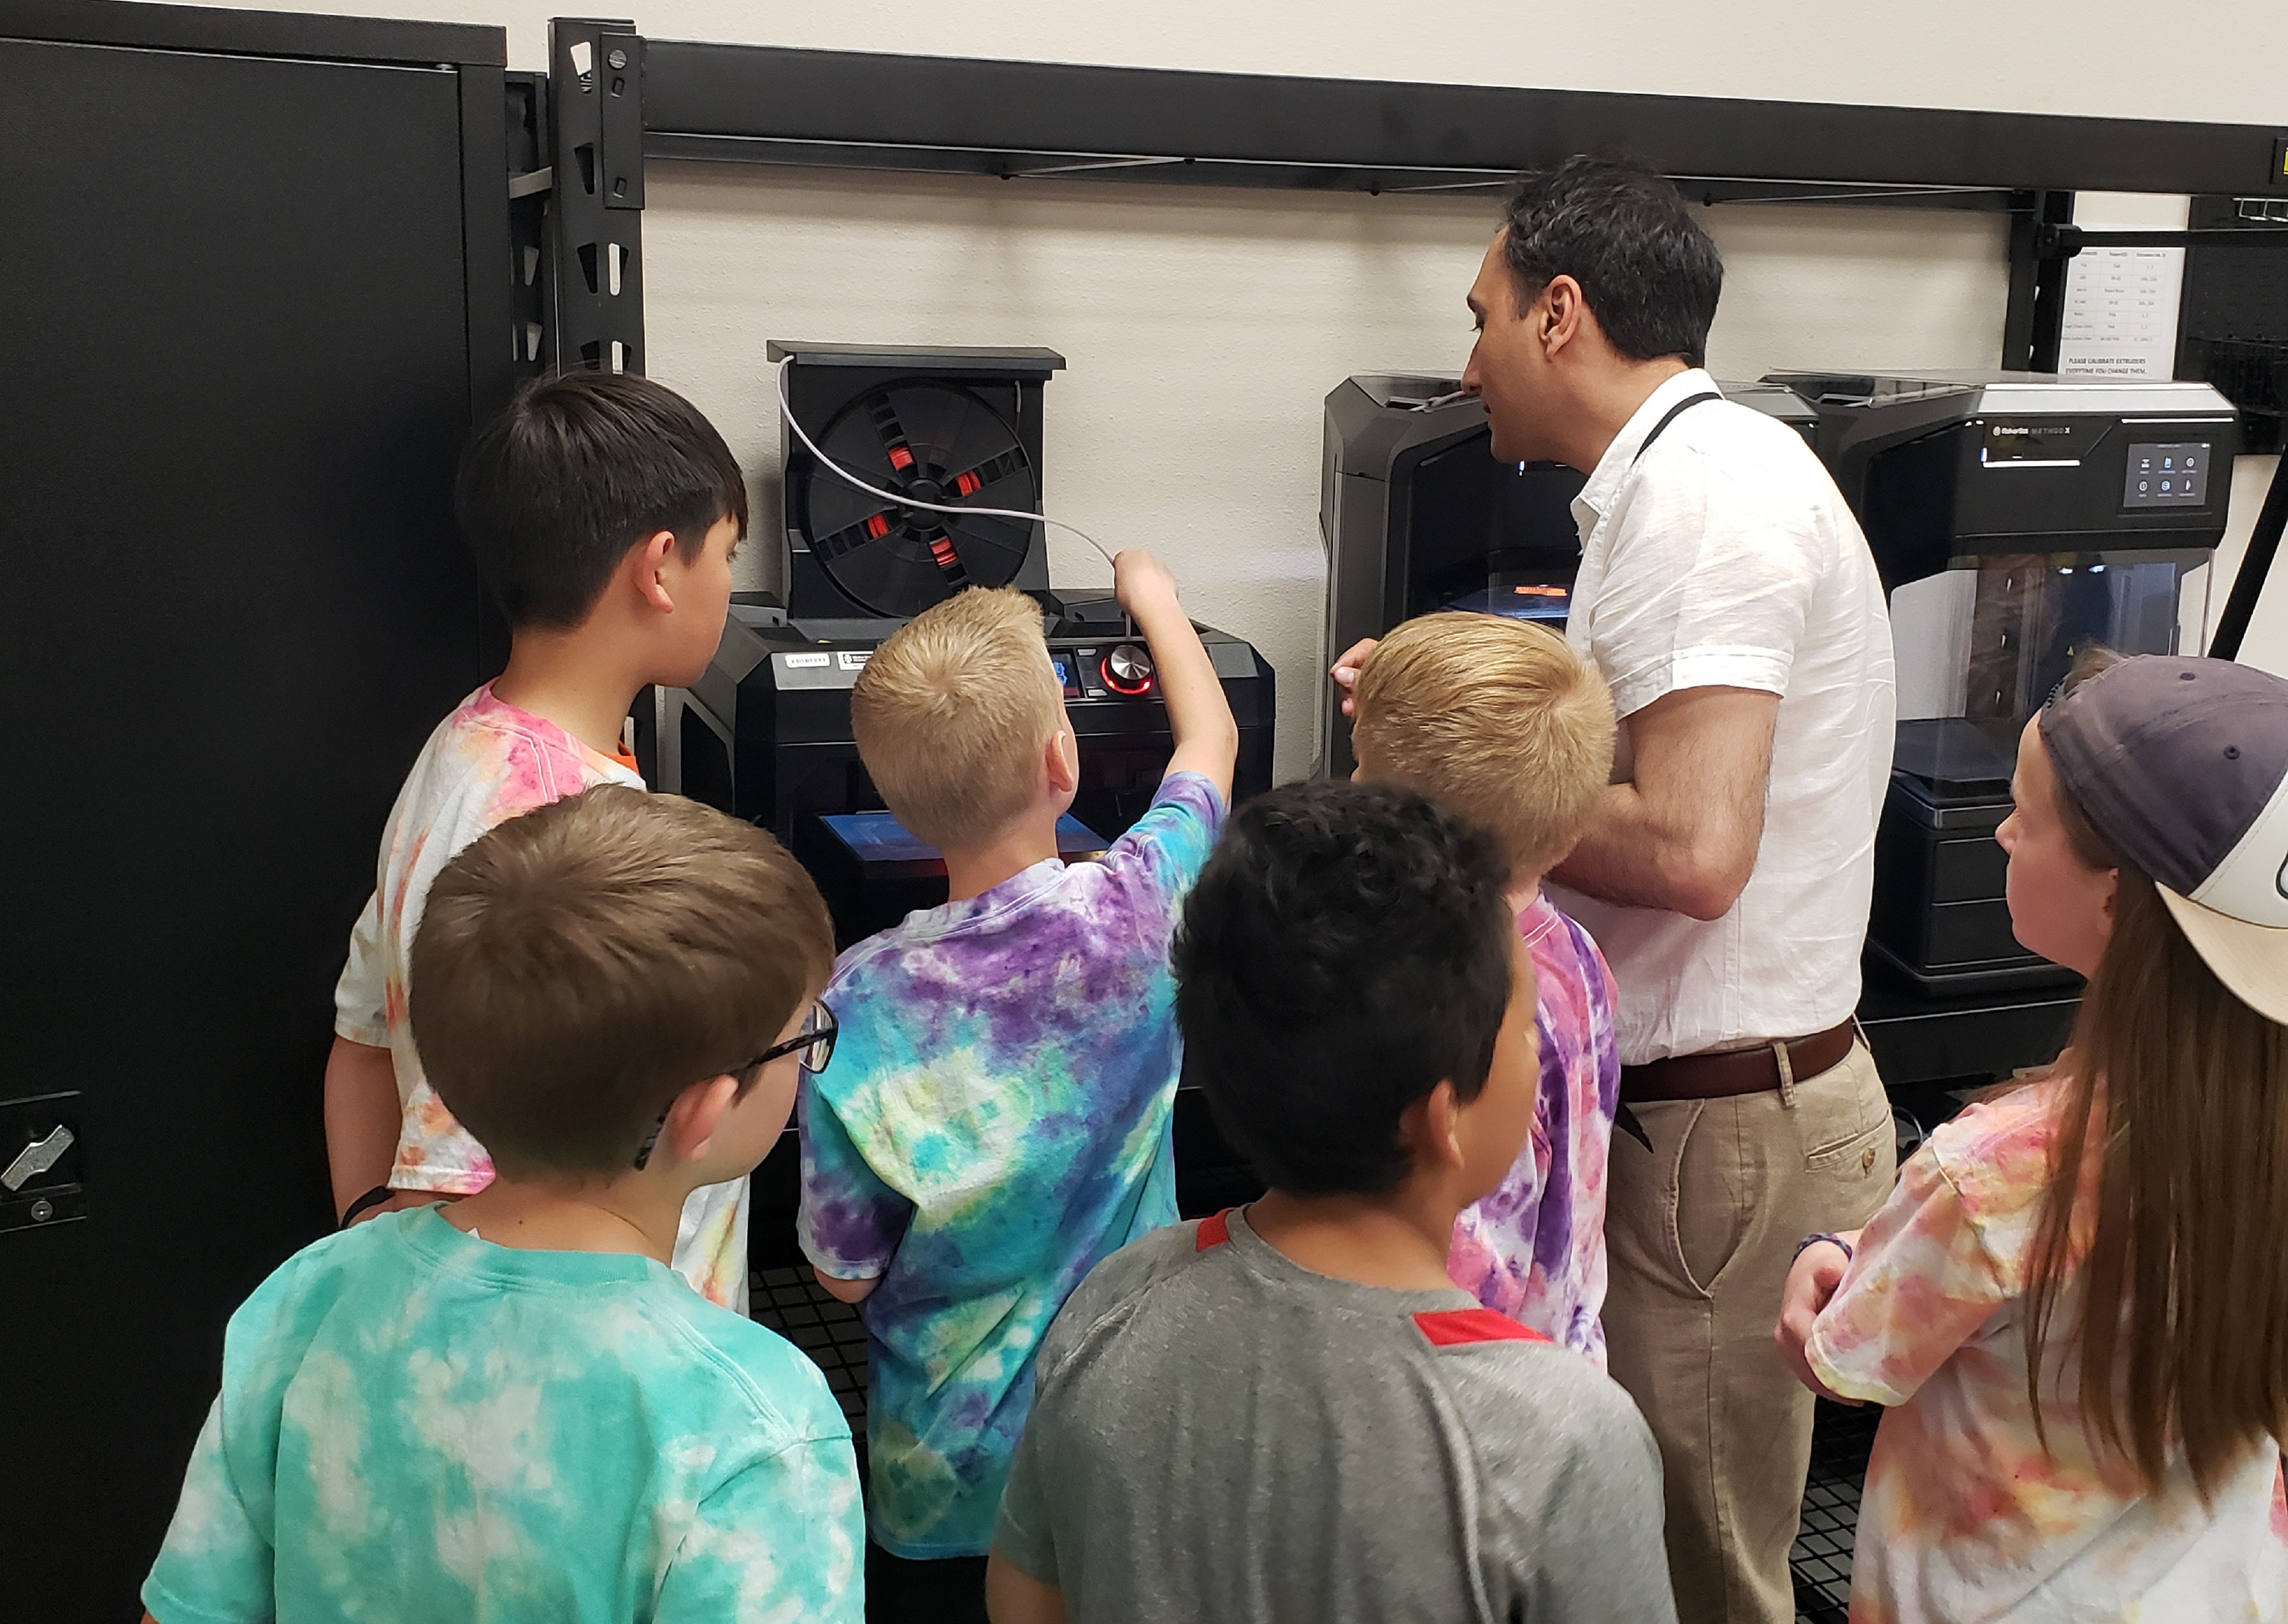 A fieldtrip of kids visiting the robotics lab